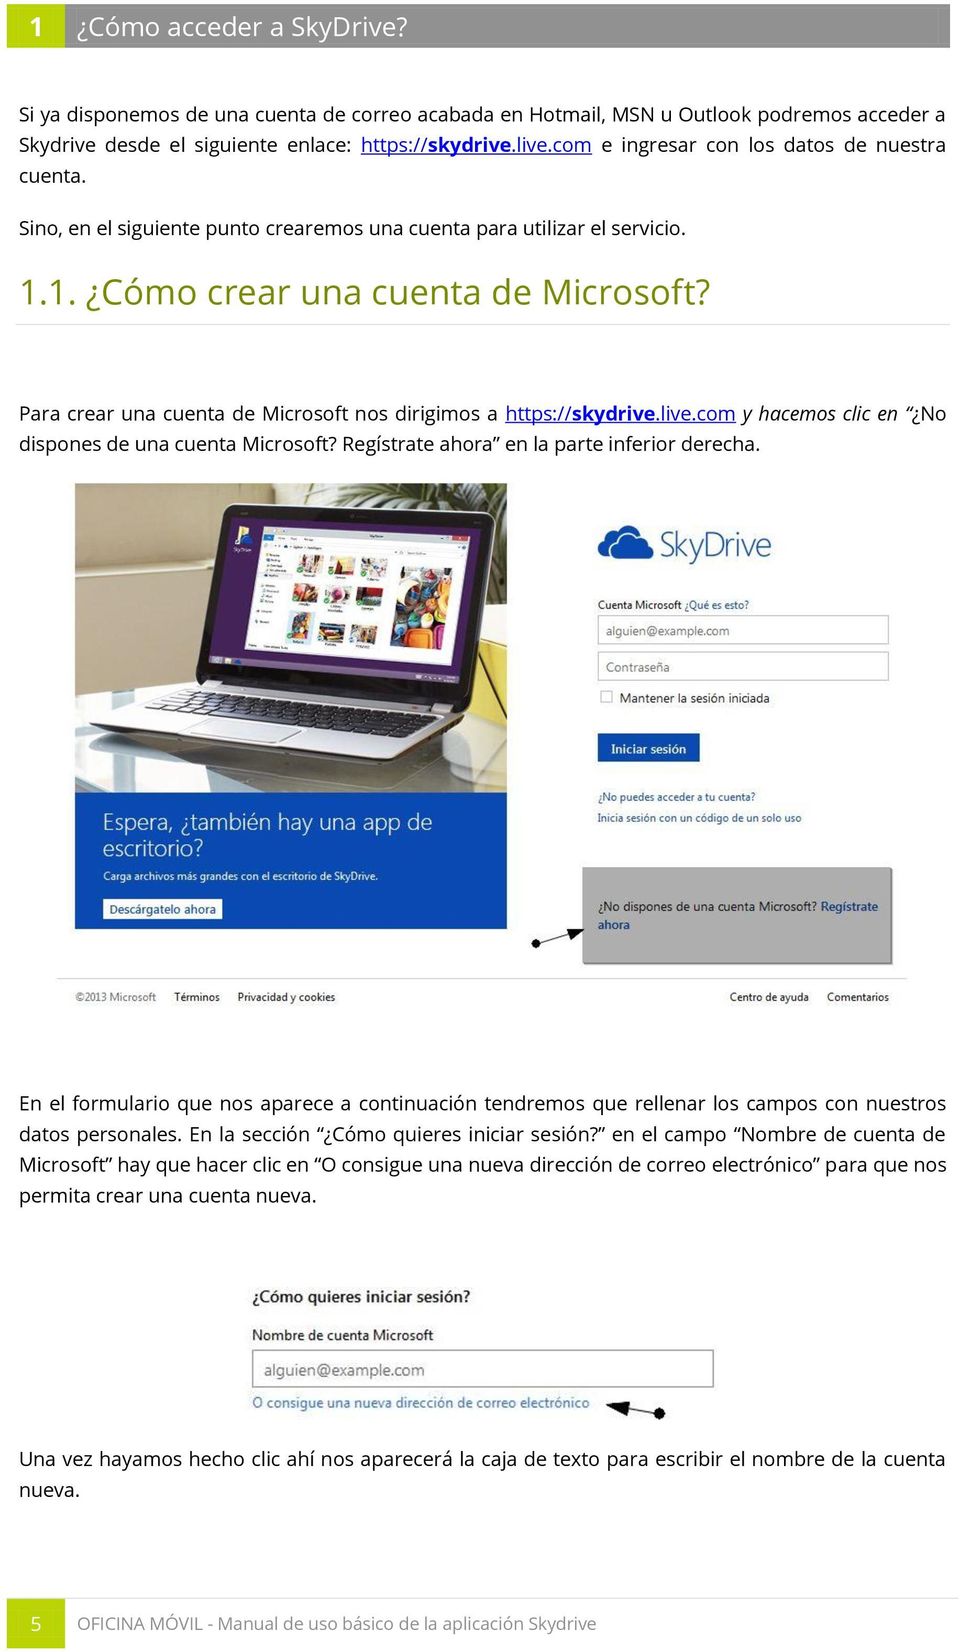 Para crear una cuenta de Microsoft nos dirigimos a https://skydrive.live.com y hacemos clic en No dispones de una cuenta Microsoft? Regístrate ahora en la parte inferior derecha.